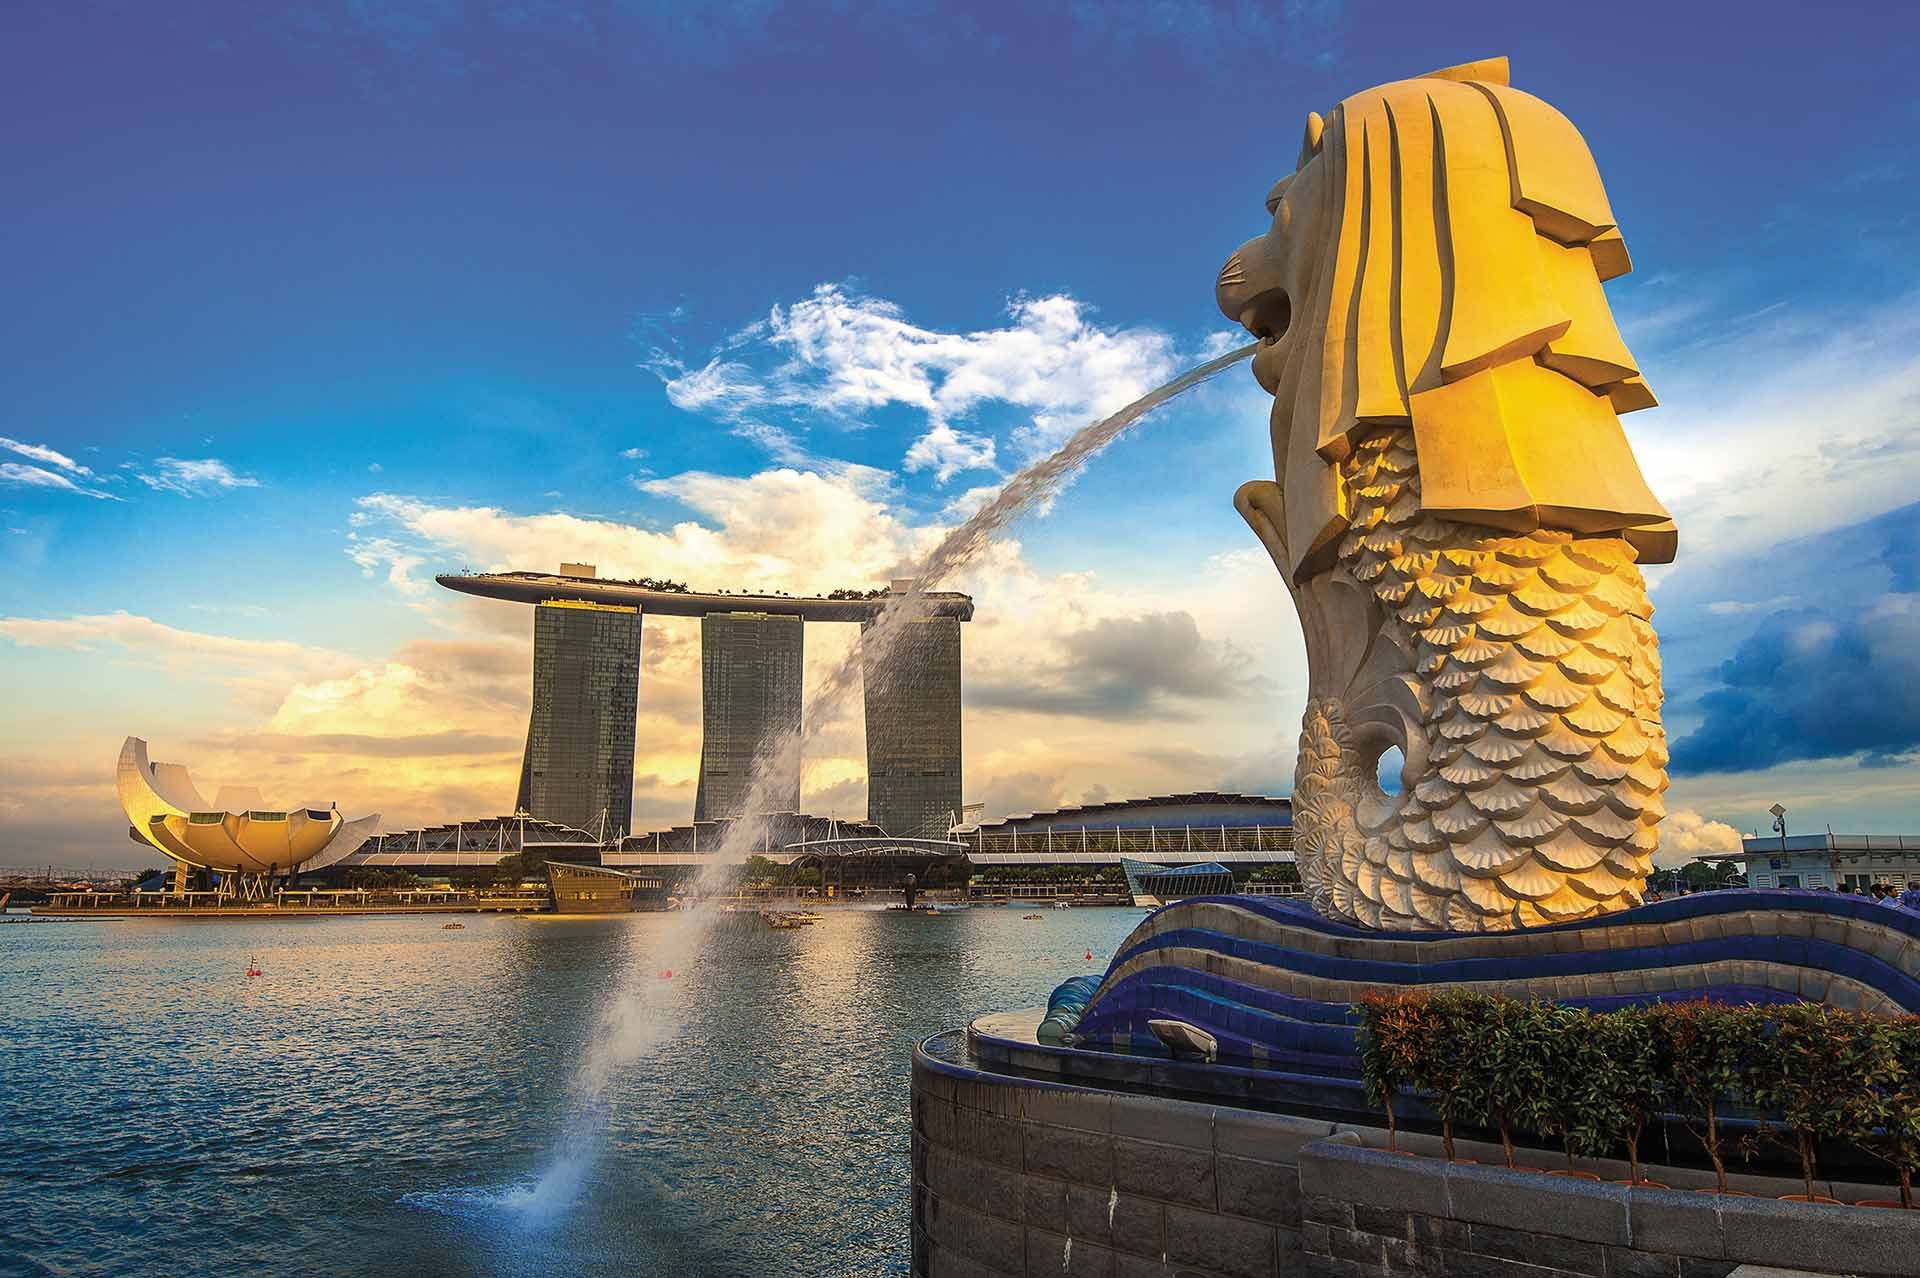 Công viên sư tử biến Merlion - Linh vật và biểu tượng của quốc đảo Singapore.